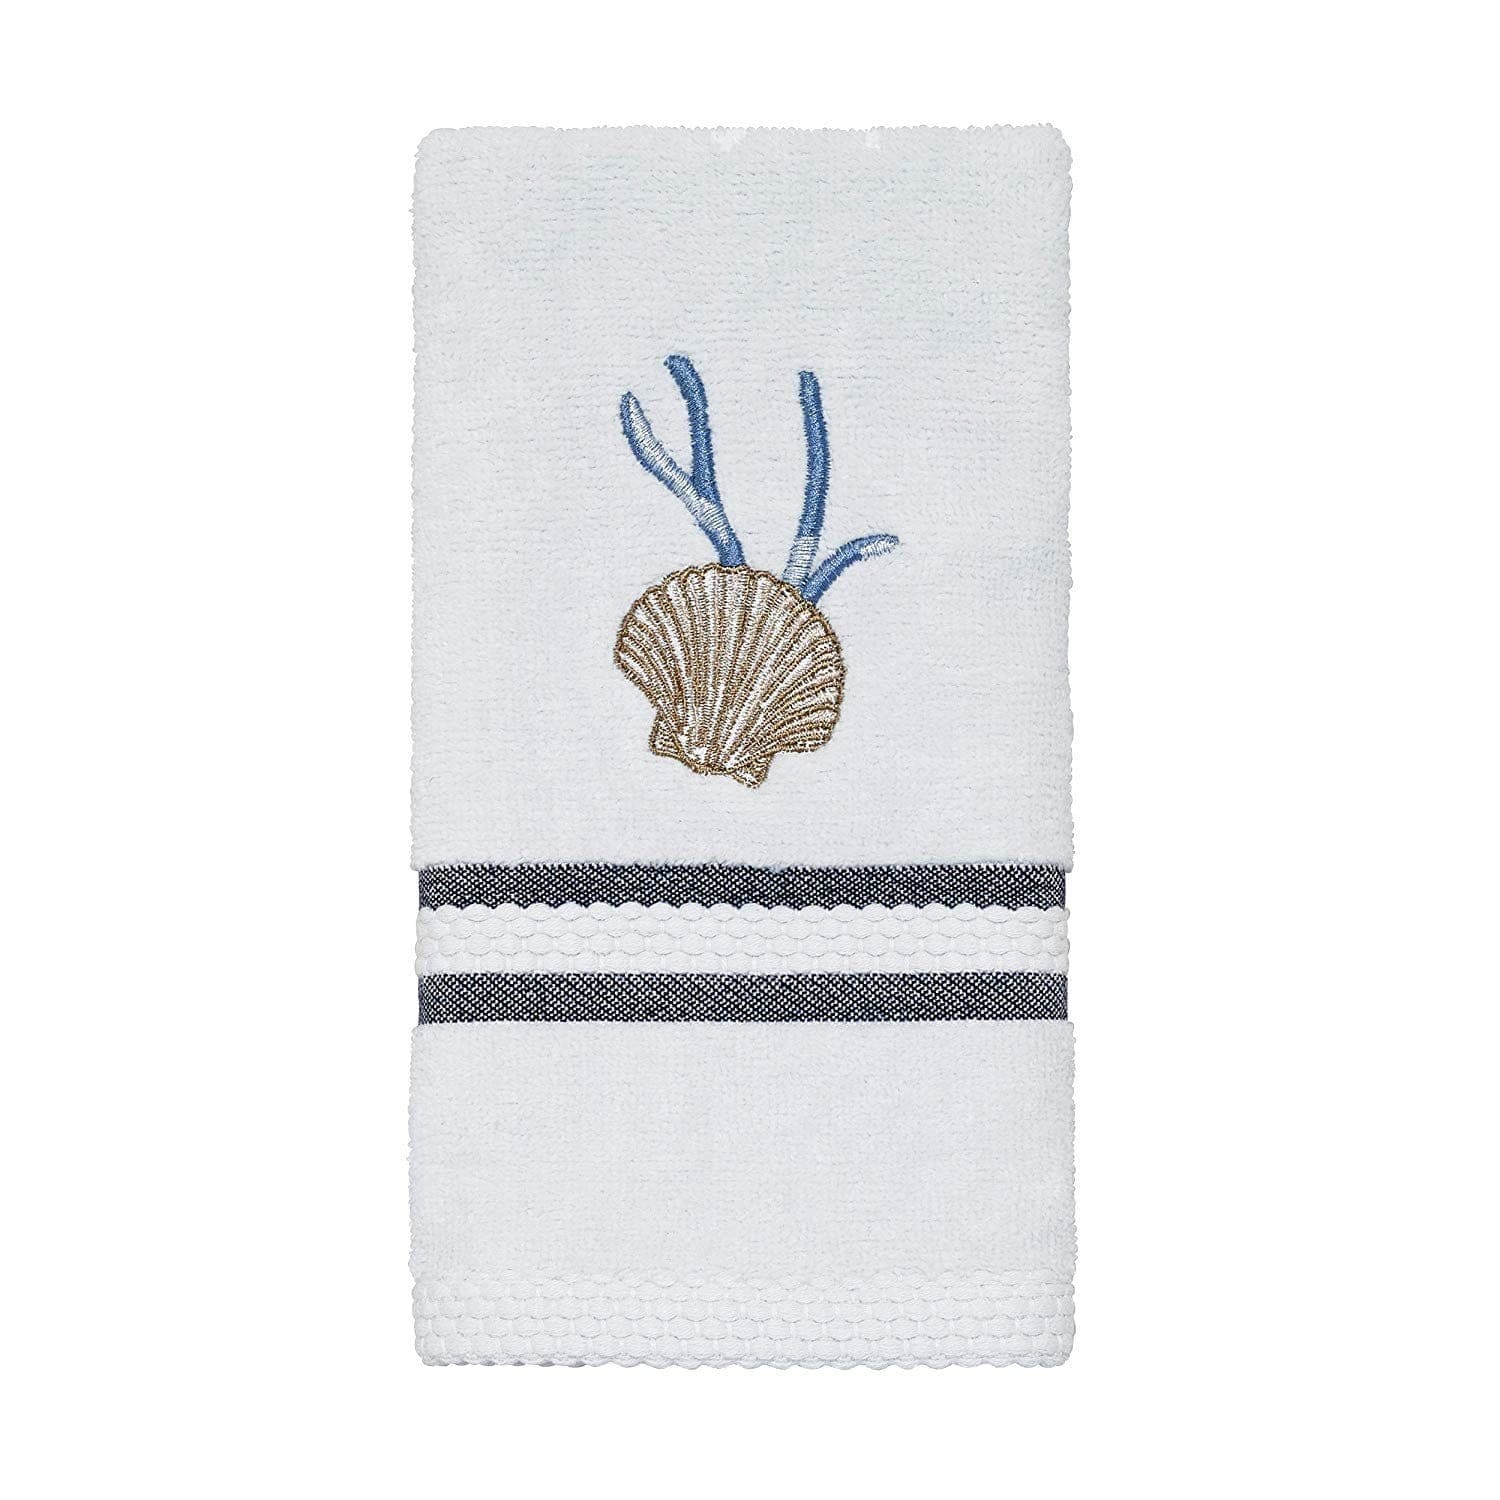 Avanti Blue Lagoon Fingertip Towel - Steel Blue - 036554 - Jashanmal Home